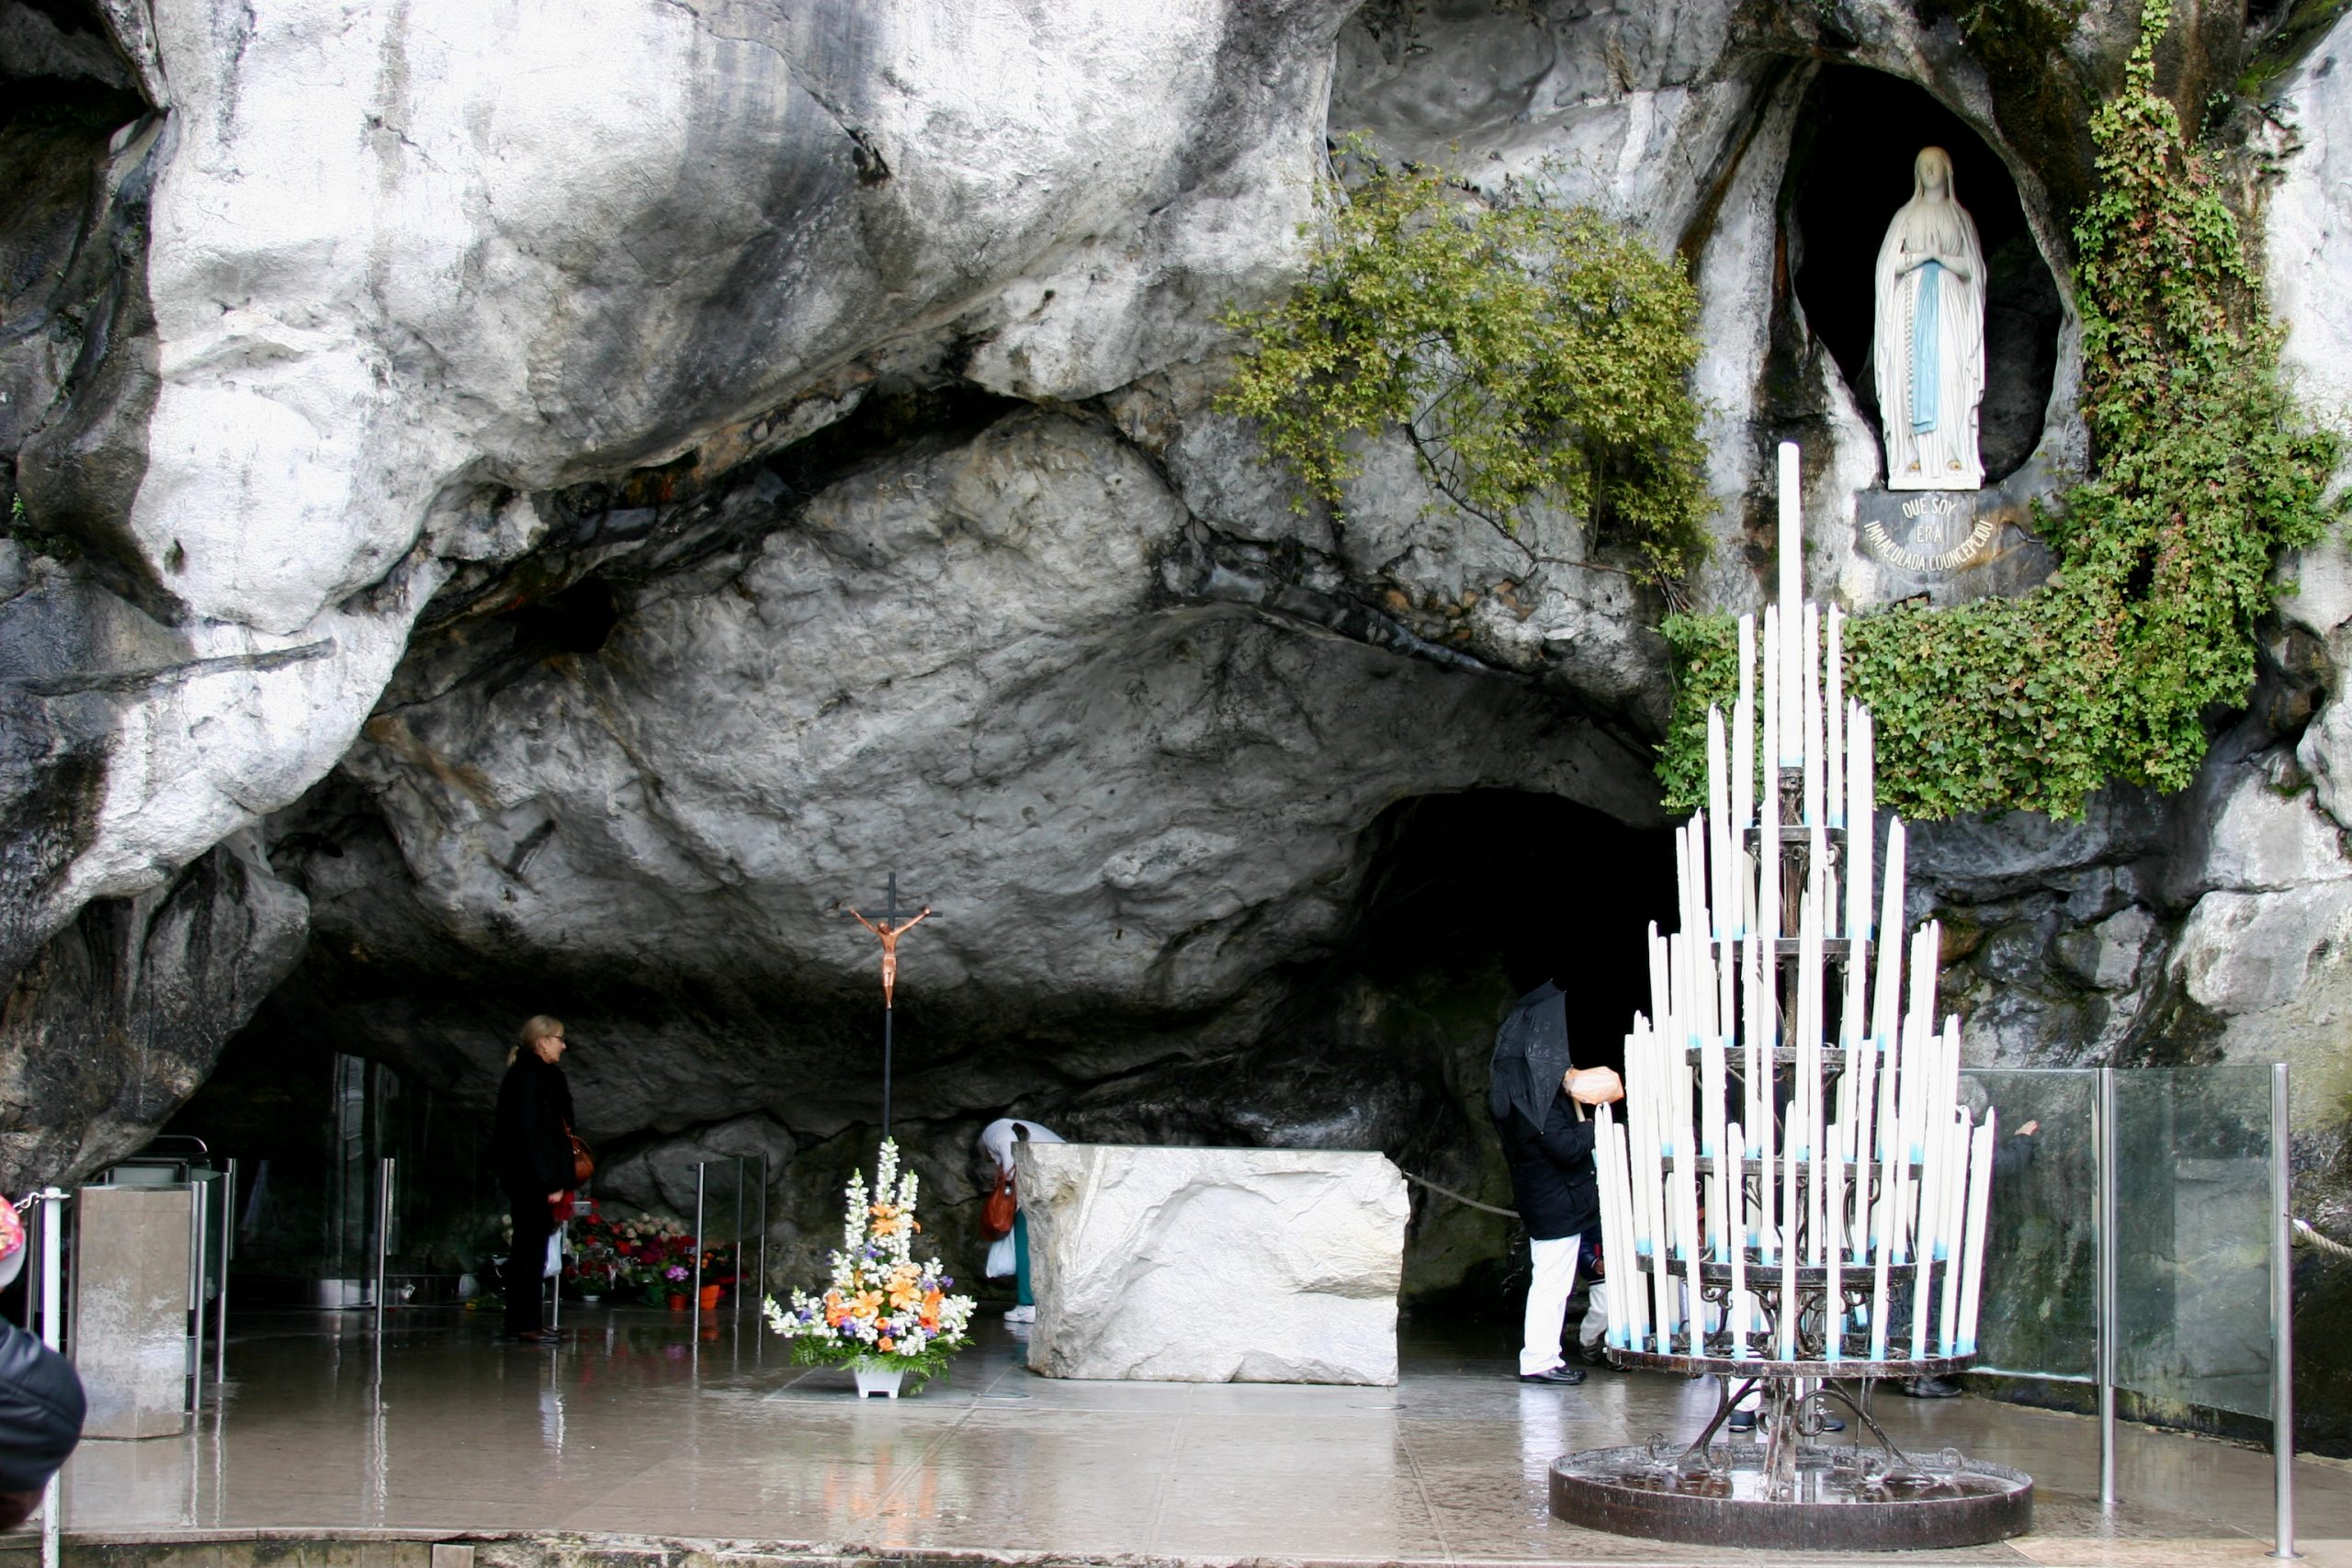 70ème pèlerinage monfortain à Lourdes – diocèse de Besançon (25) du 21 au 28 avril 2018